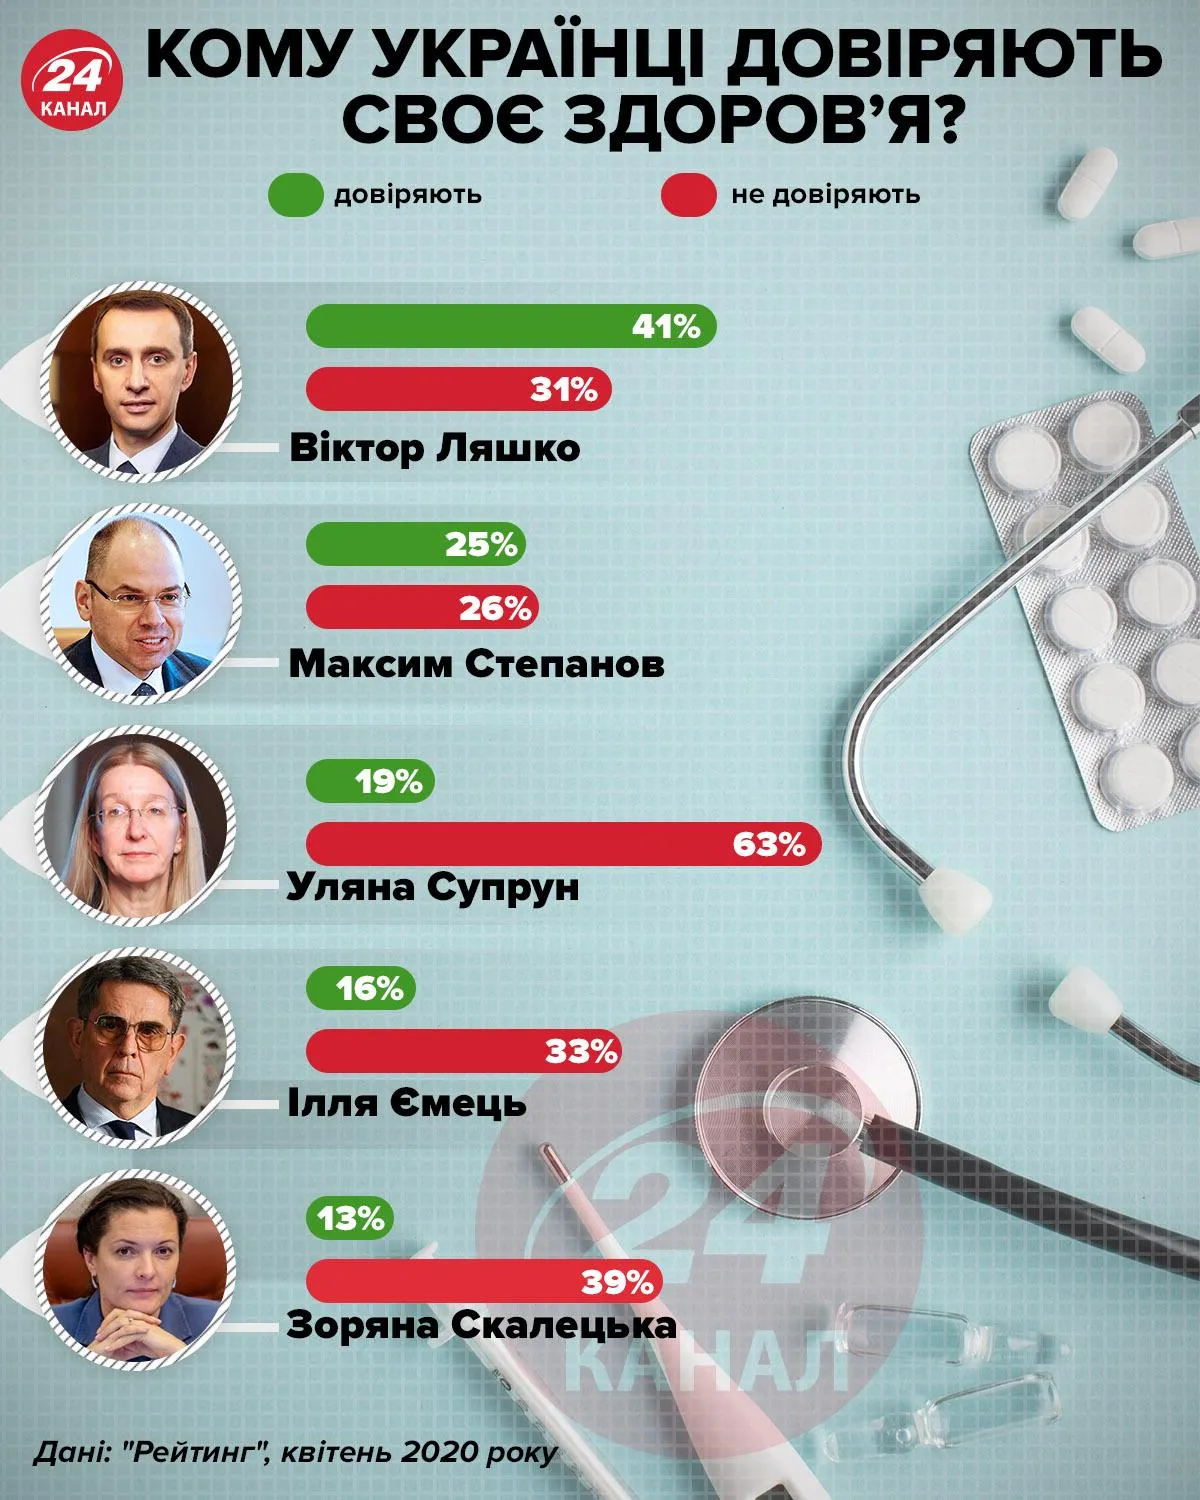 Кому украинцы доверяют свое здоровье / Инфографика 24 канала